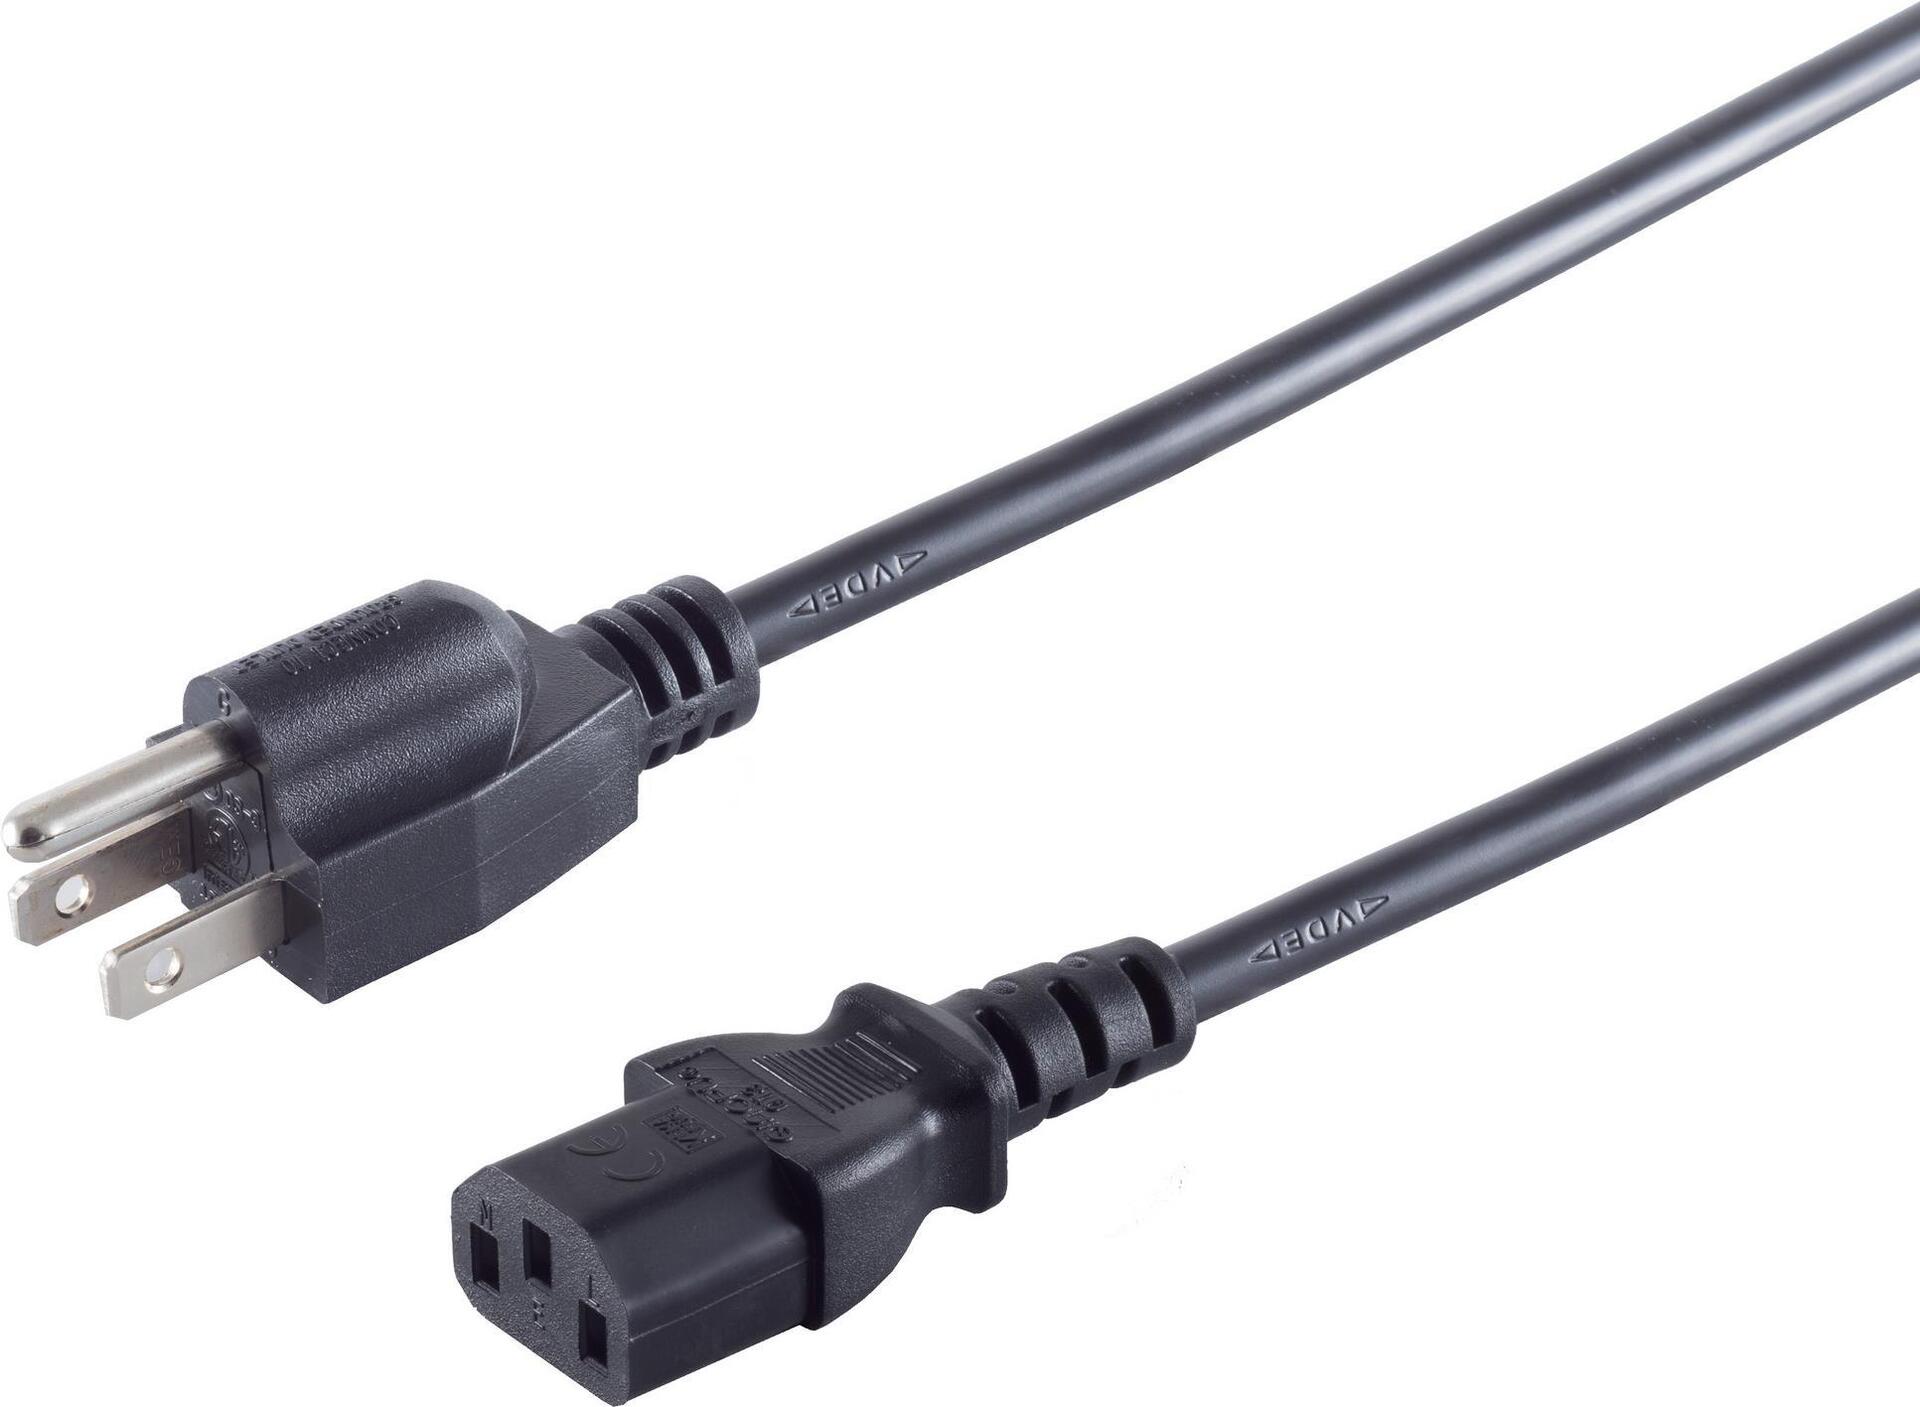 S/CONN maximum connectivity Netzanschlusskabel USA Stecker an Kaltgerätebuchse, schwarz, 1,8 m (US60006)